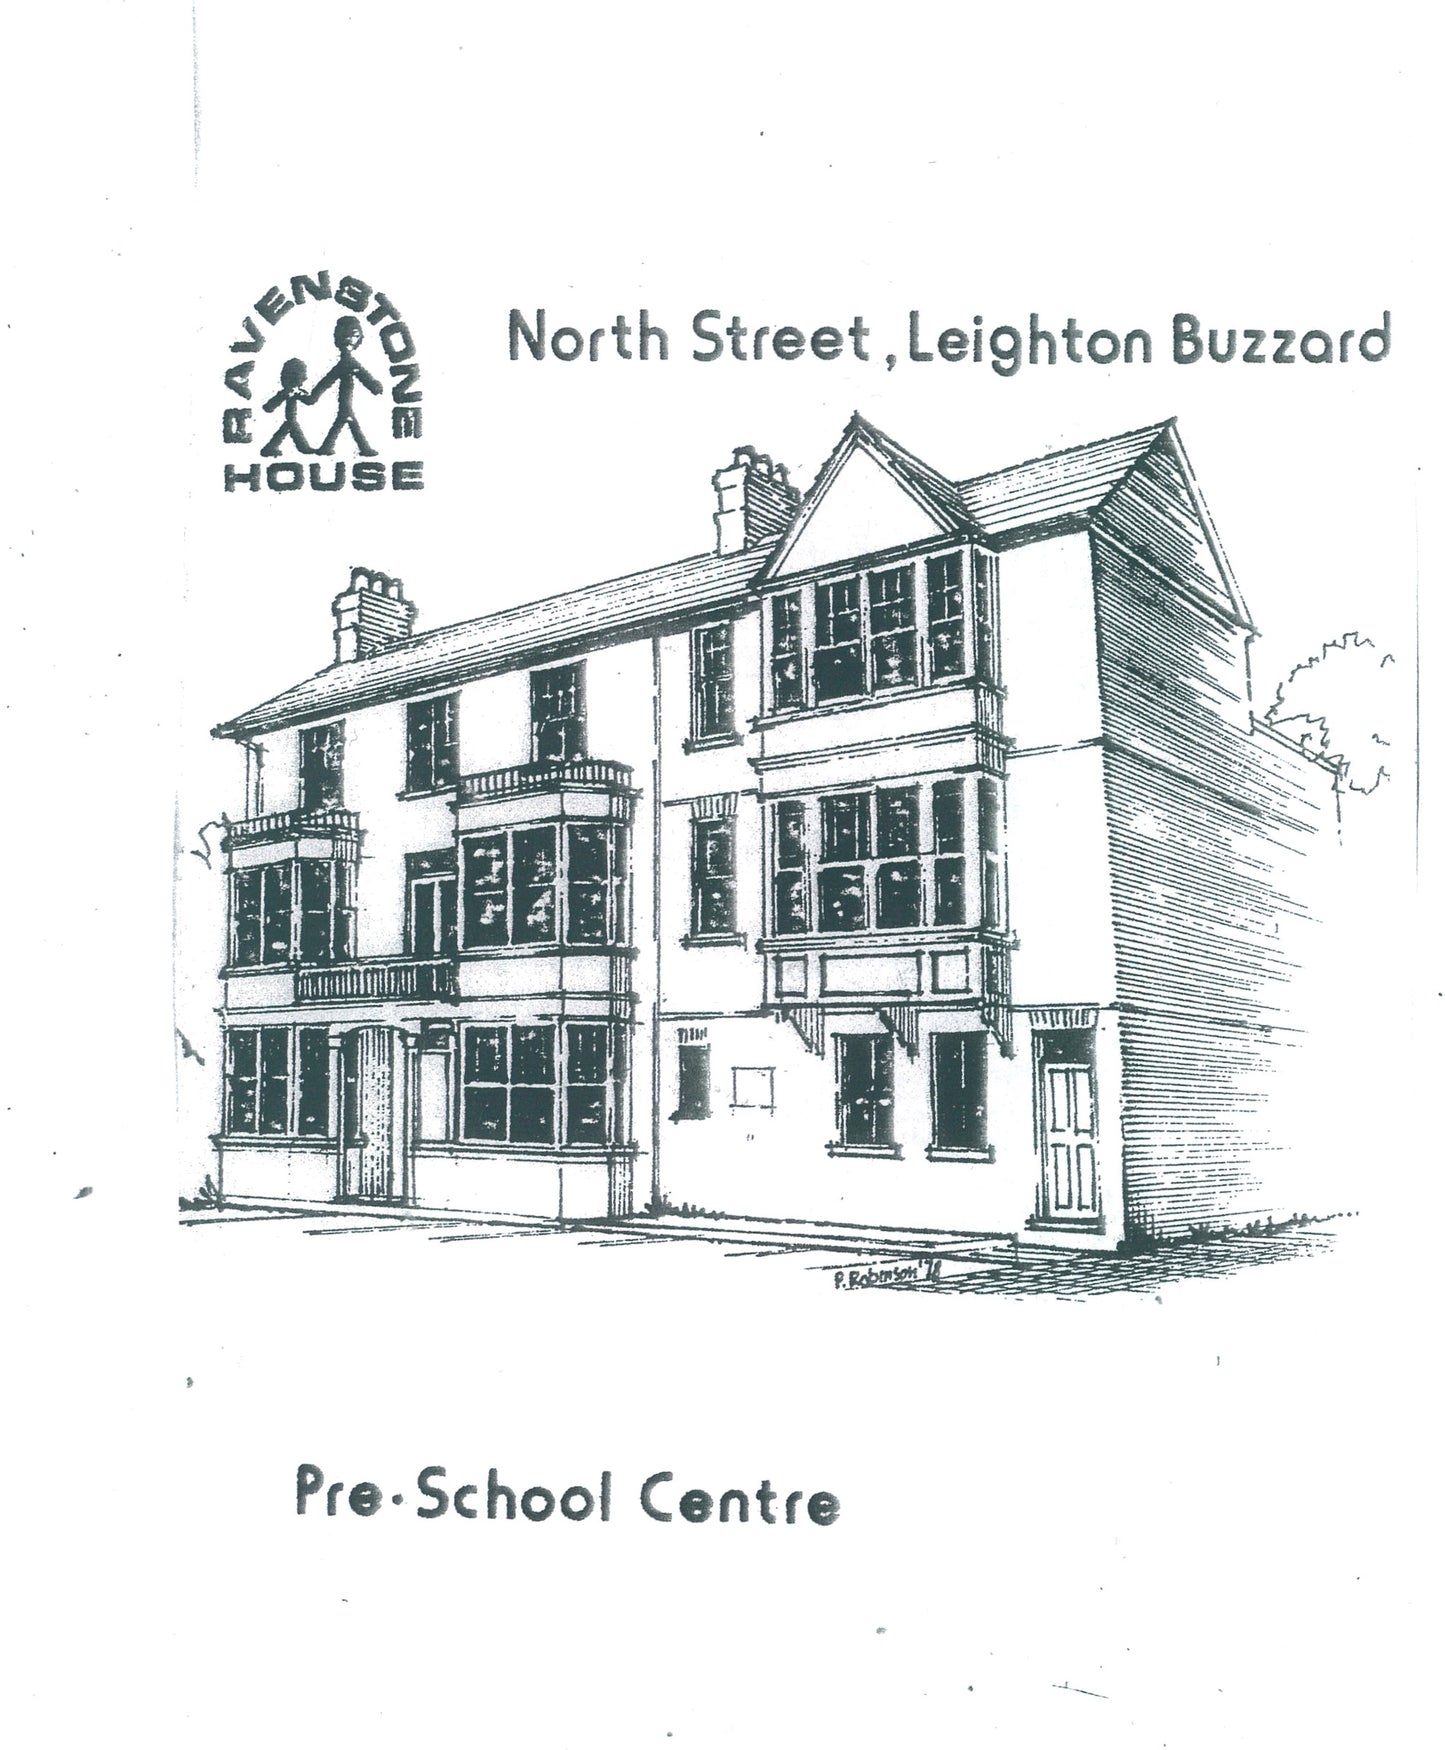 1978 Expansion to North Street, Leighton Buzzard